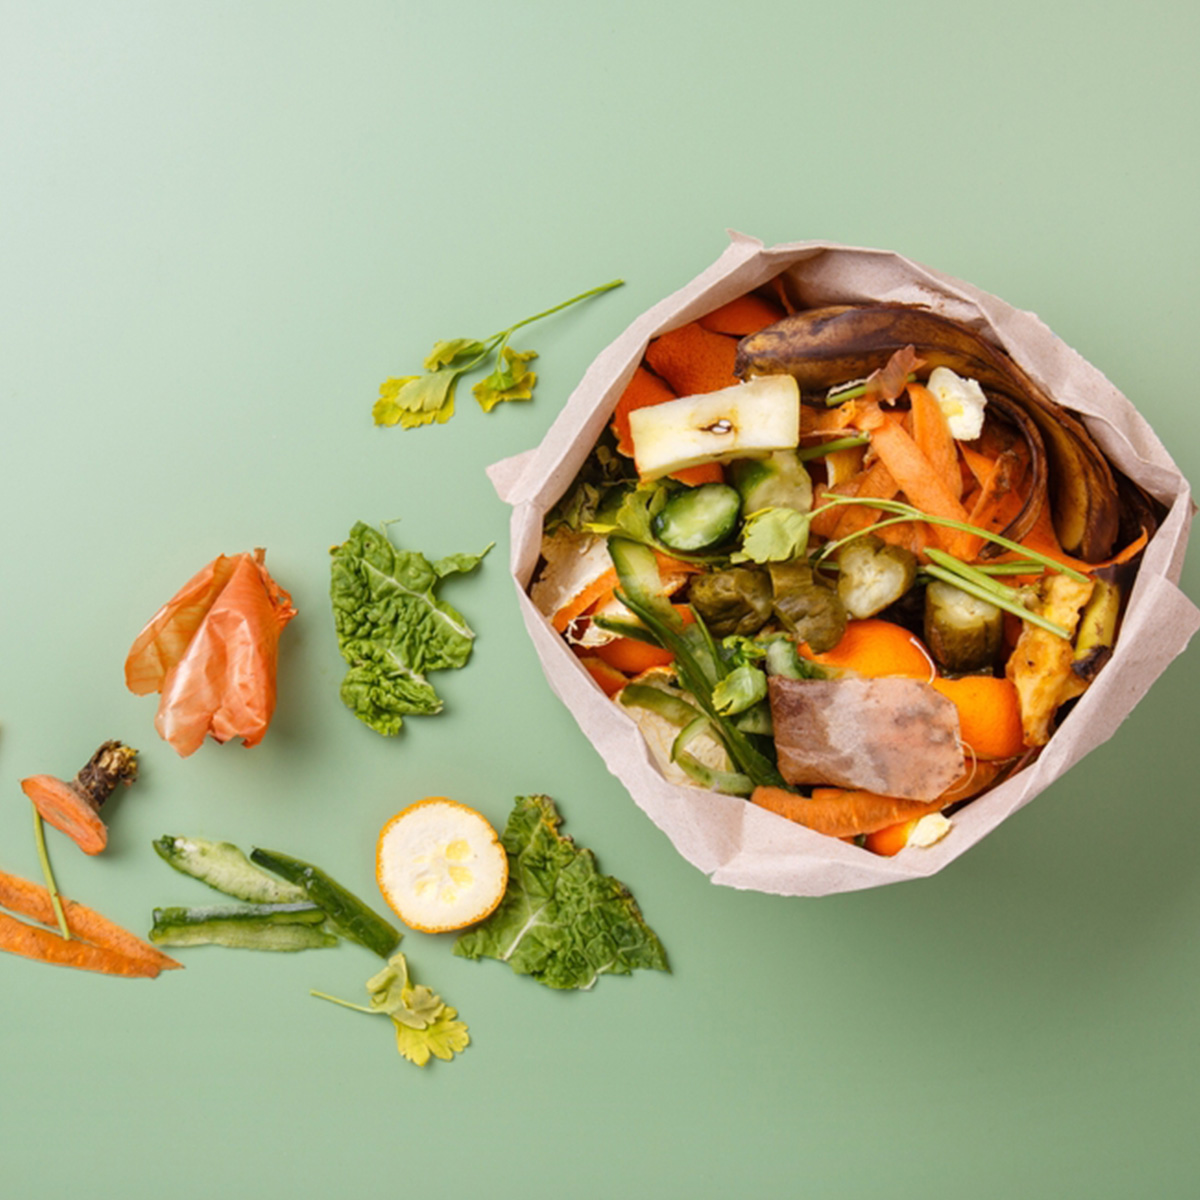 จัดการ food waste ด้วยการแยกประเภท